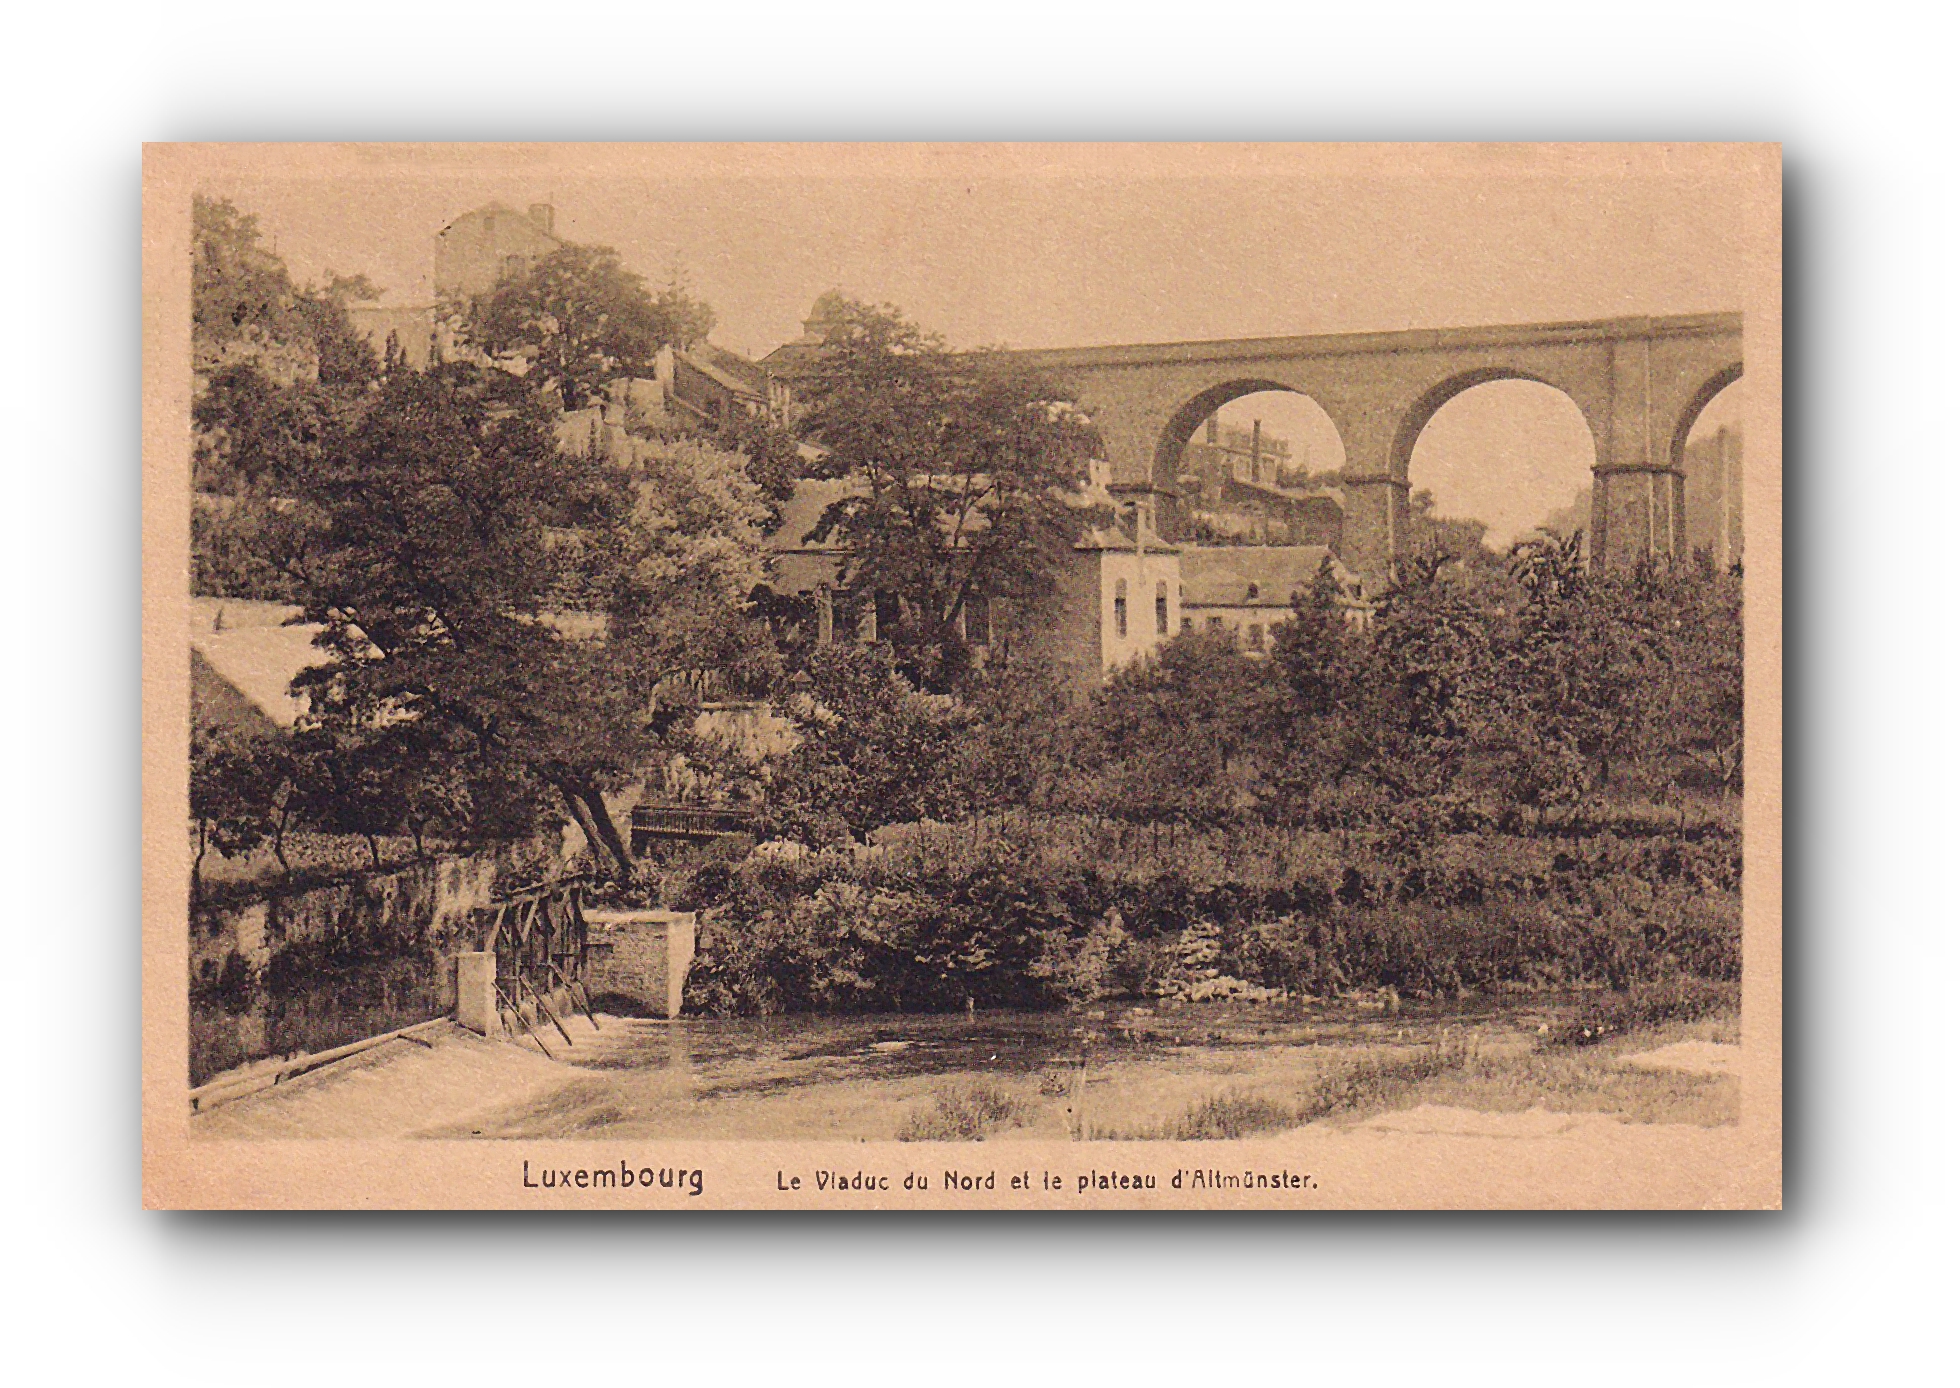 LUXEMBOURG  - Le Viaduc du Nord et le plateau d'Altmünster - 23.08.1923